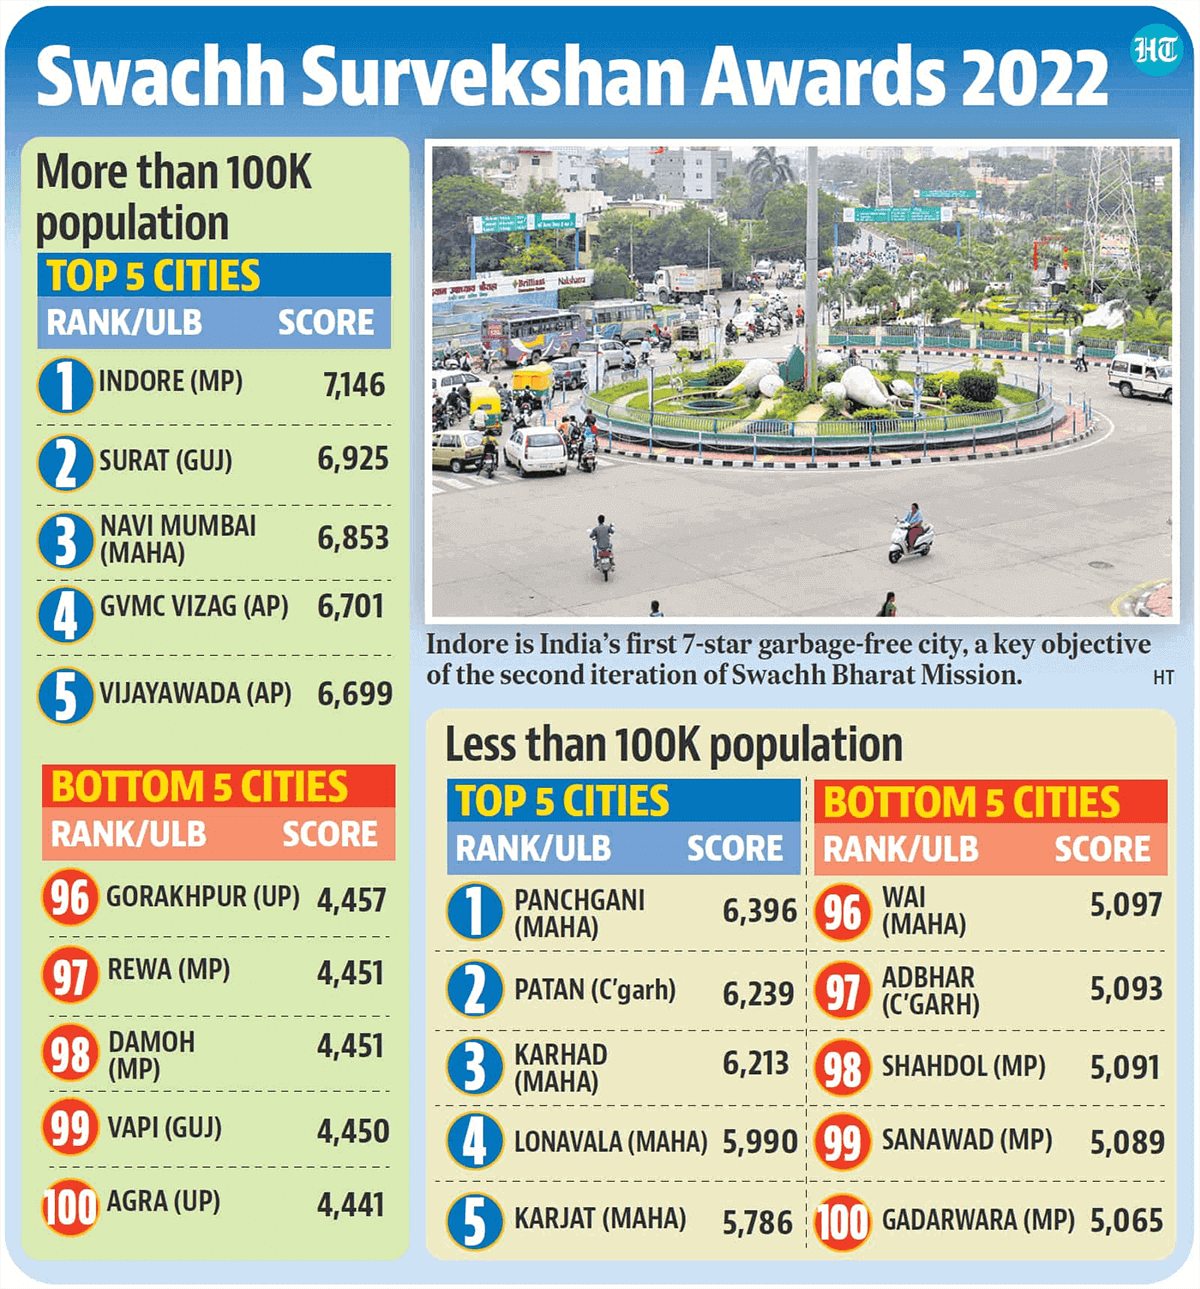 Swachh Survekshan Awards 2022